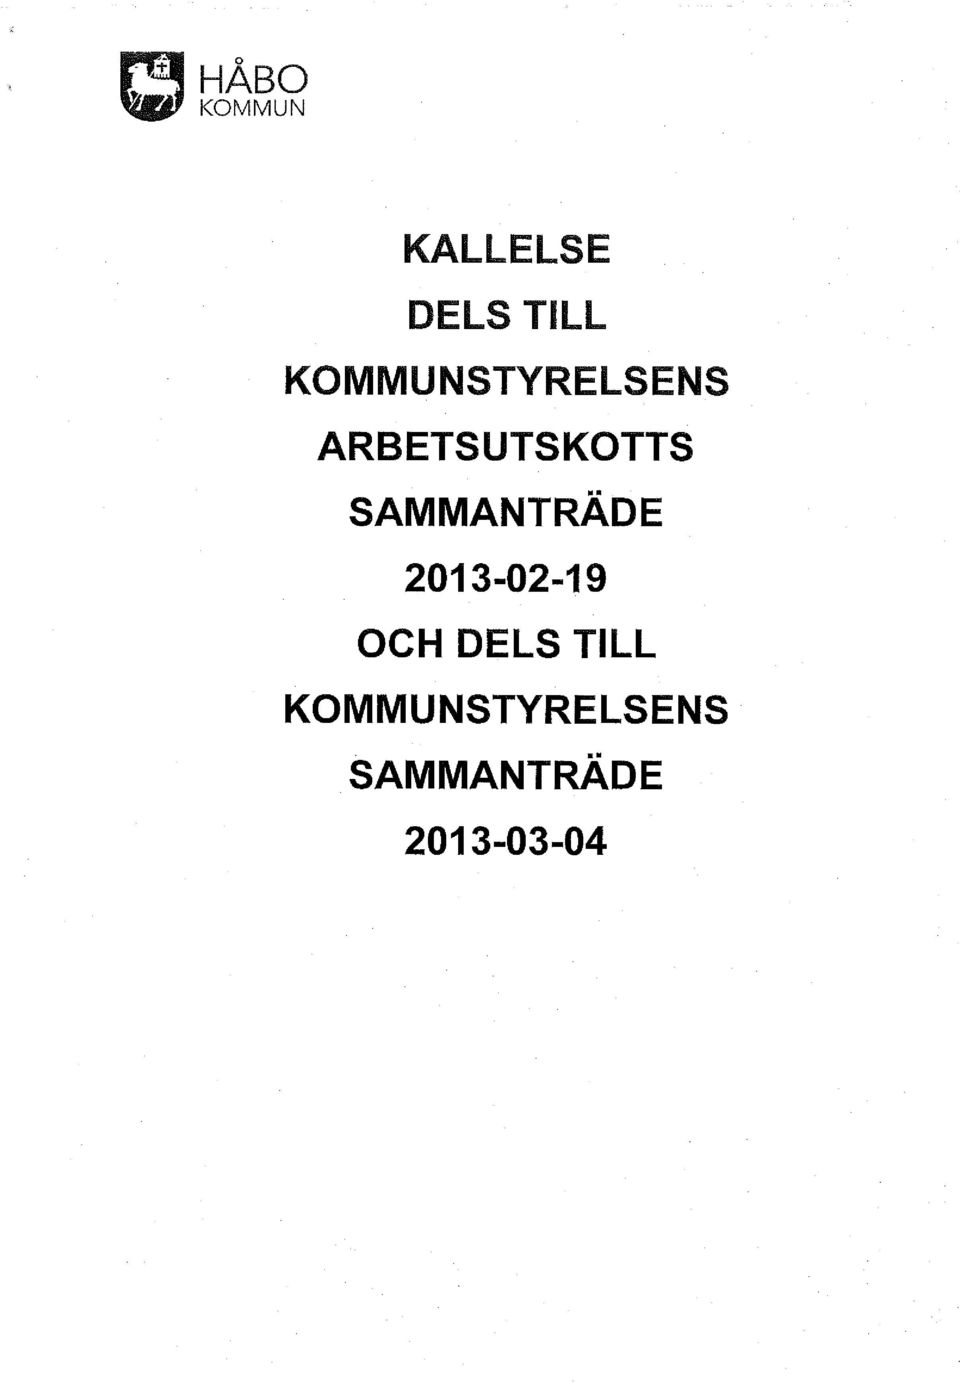 SAMMANTRÄDE 2013-02-19 OCH DELS TILL